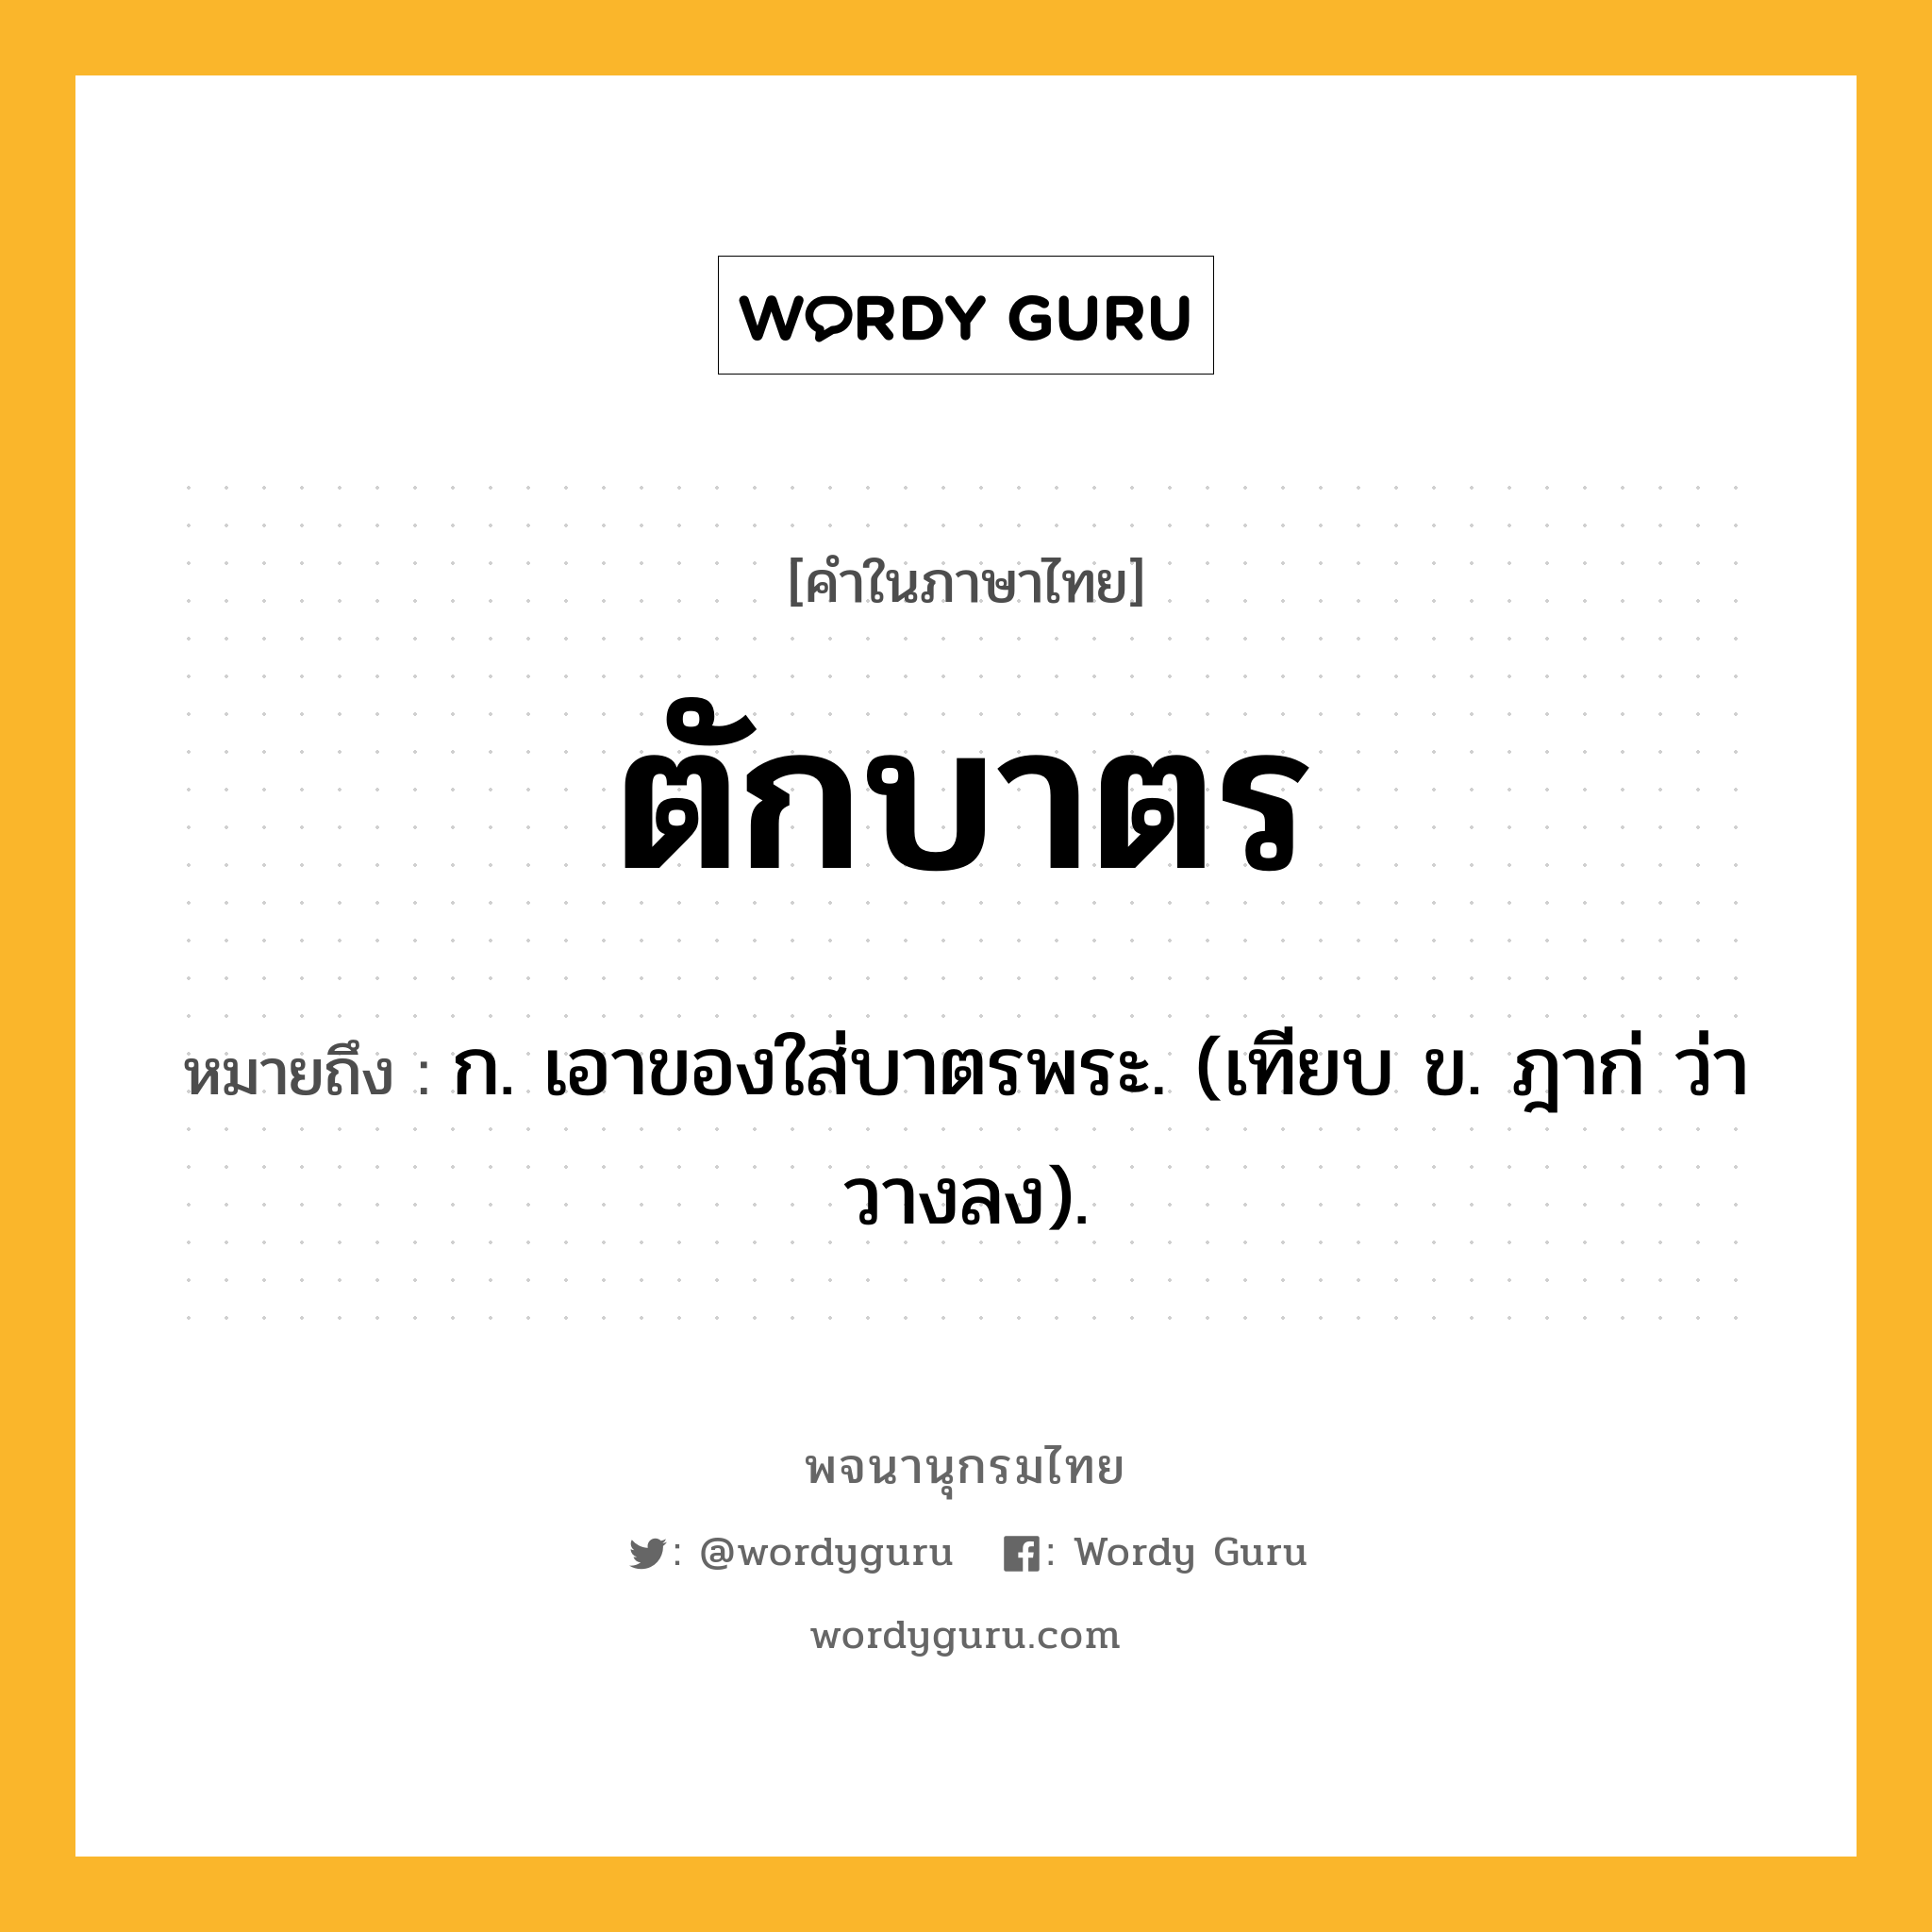 ตักบาตร ความหมาย หมายถึงอะไร?, คำในภาษาไทย ตักบาตร หมายถึง ก. เอาของใส่บาตรพระ. (เทียบ ข. ฎาก่ ว่า วางลง).